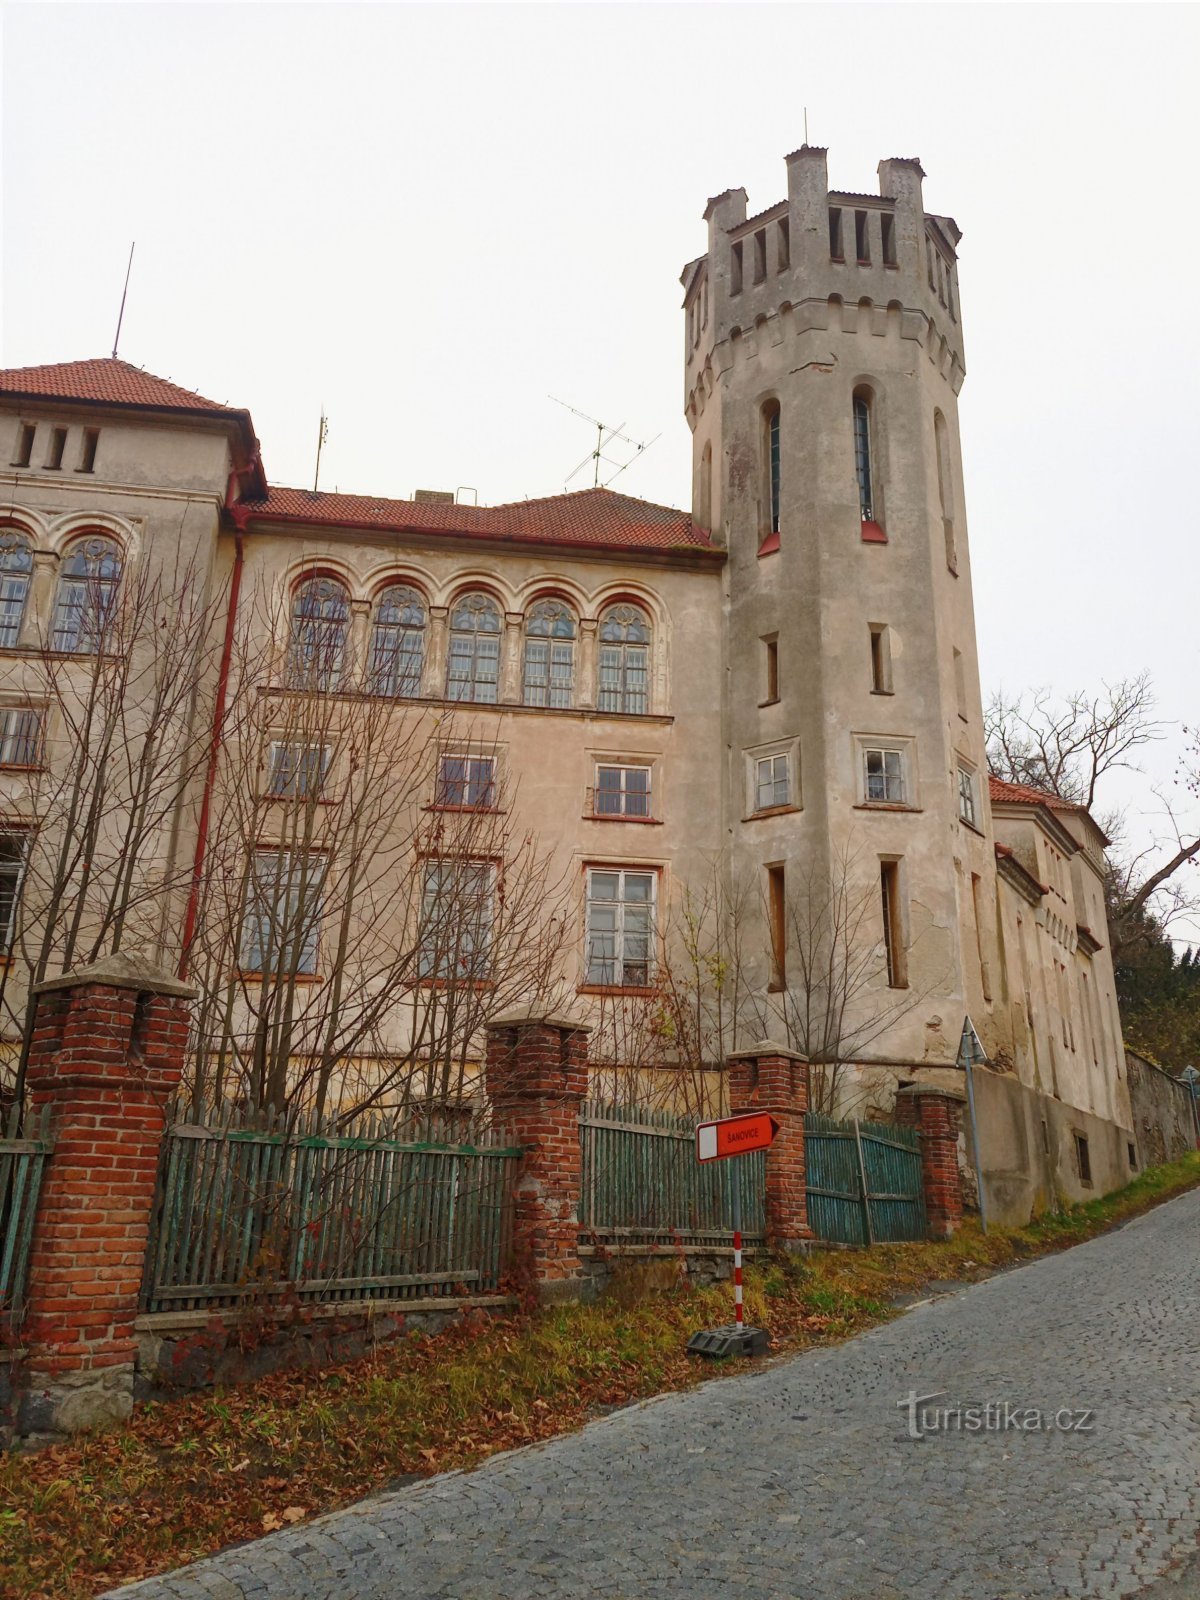 2. Castillo abandonado en Jetřichovice. Reconstrucción en estilo inglés y gótico con ocho